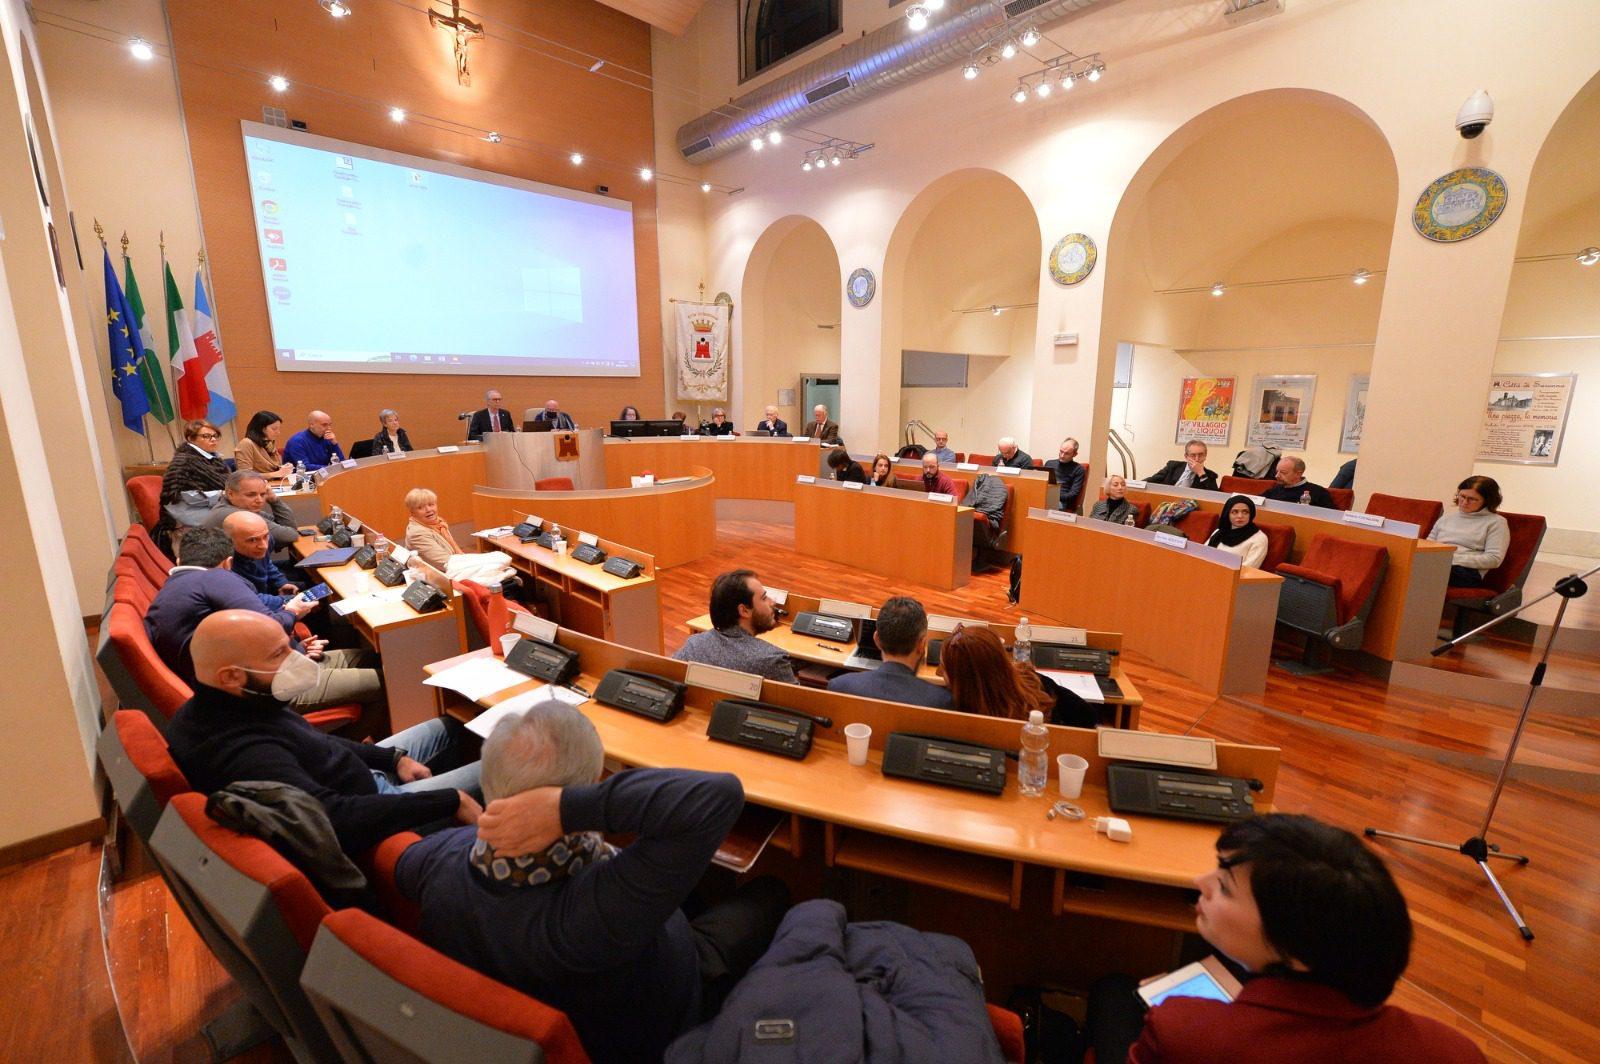 “Dalla maggioranza spaccata al silenzio dell’assessore al Commercio”: Obiettivo Saronno analizza l’ultimo consiglio comunale